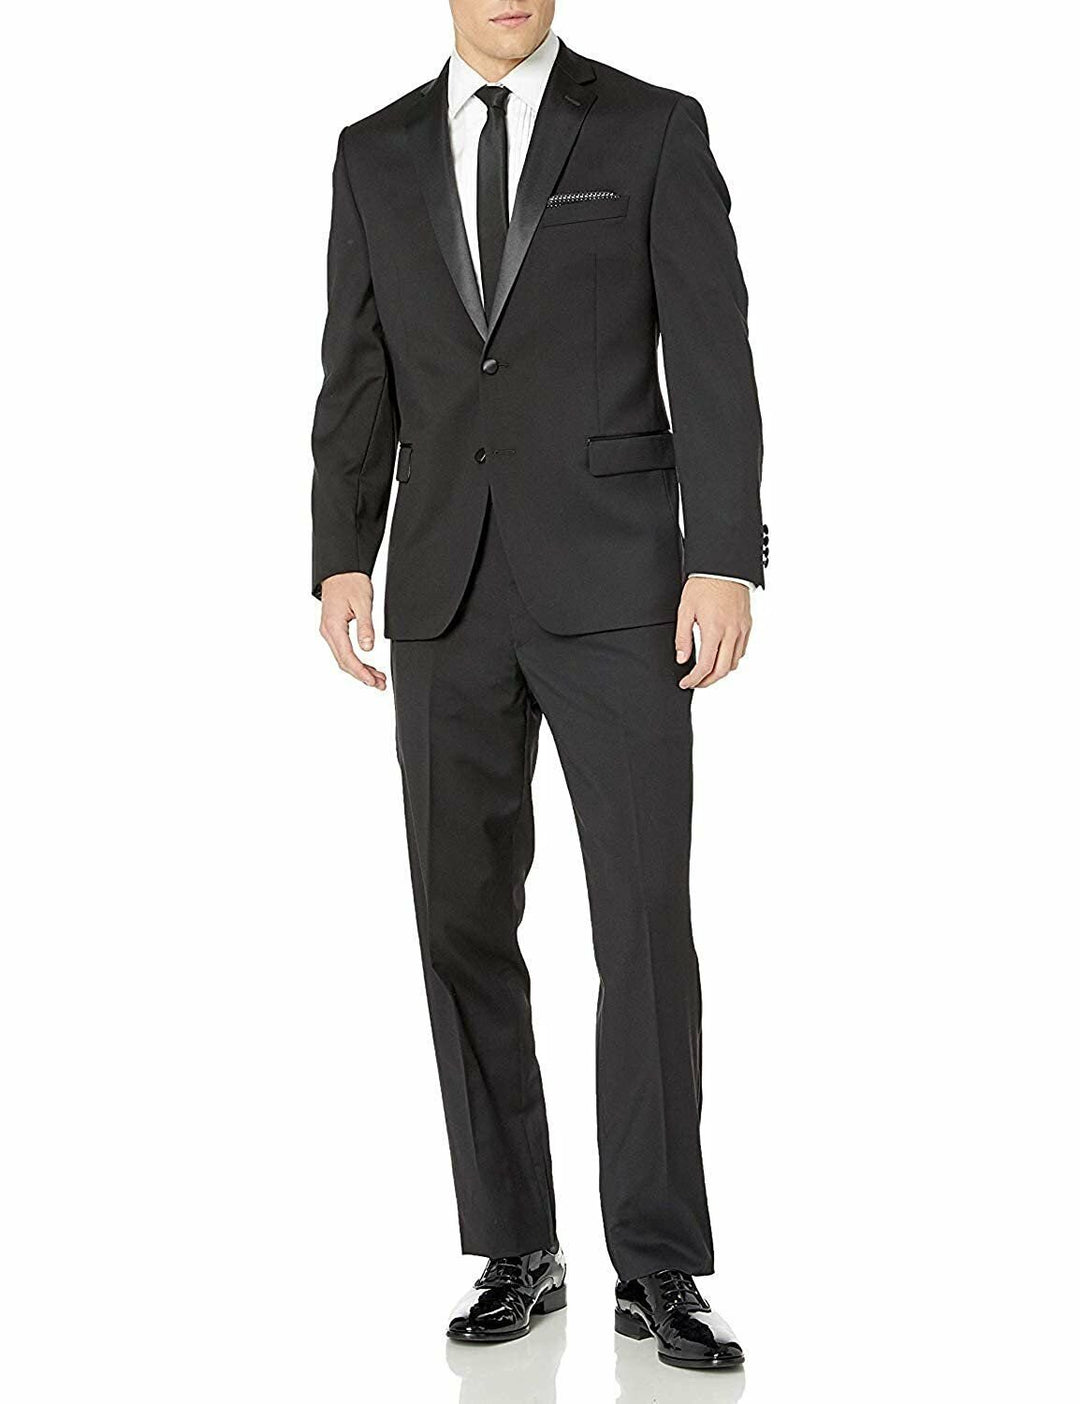 Adam Baker Men's Regular Fit Two Button Notch Lapel Tuxedo Suit - Black